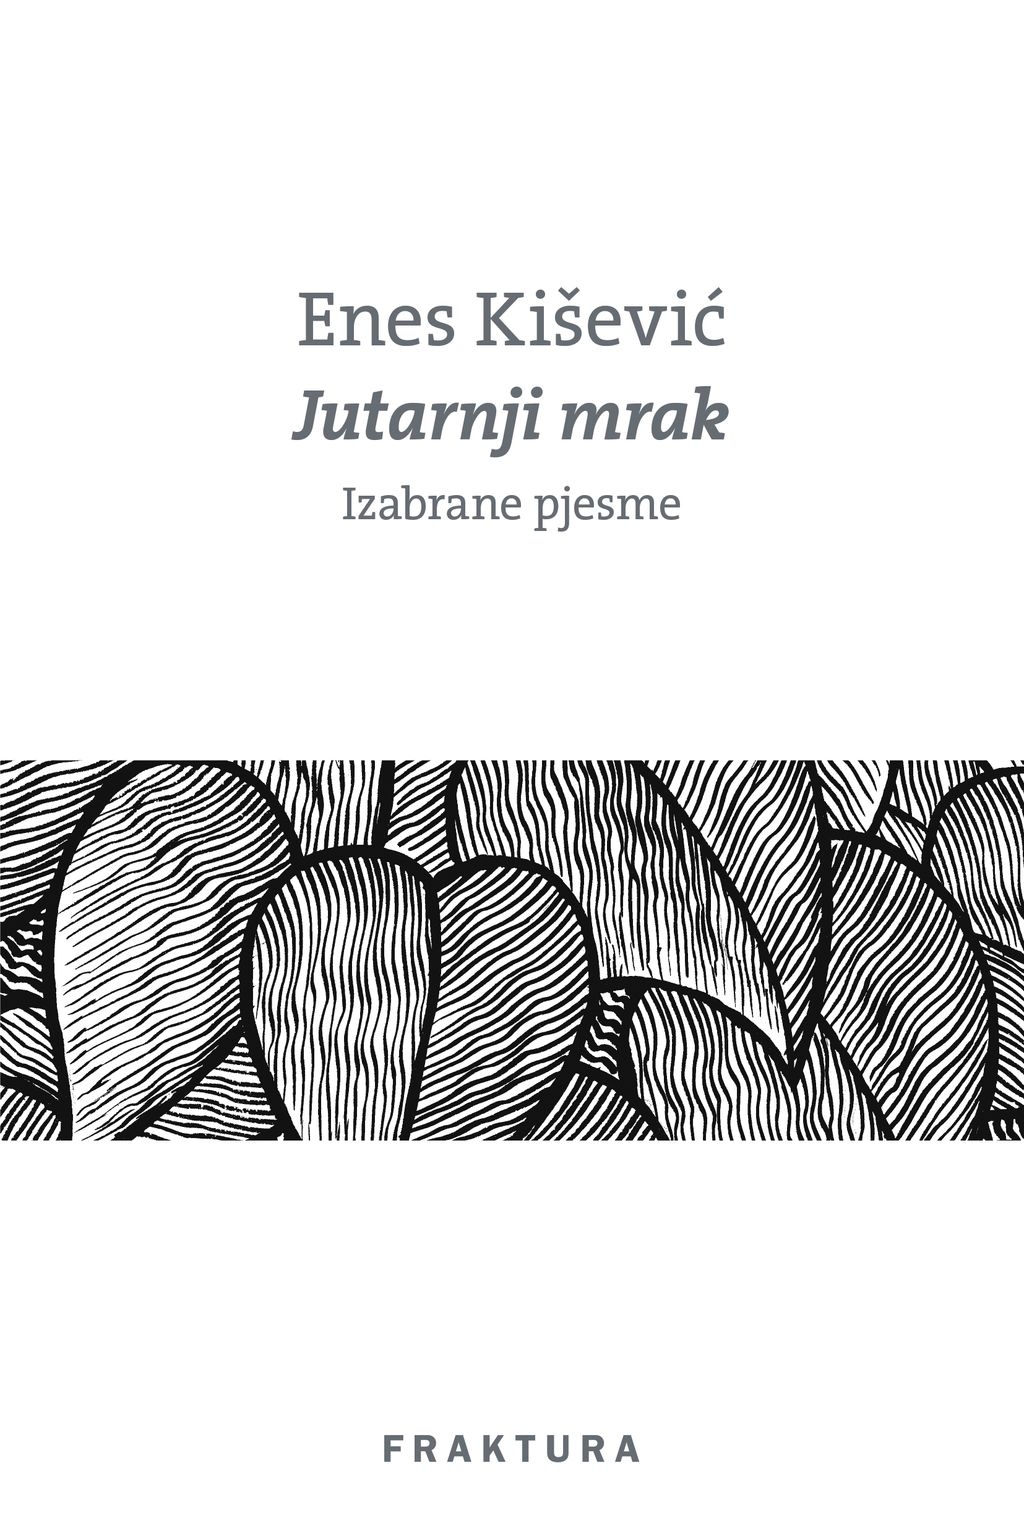 Promocija zbirke poezije Enesa Kiševića "Jutarnji mrak"